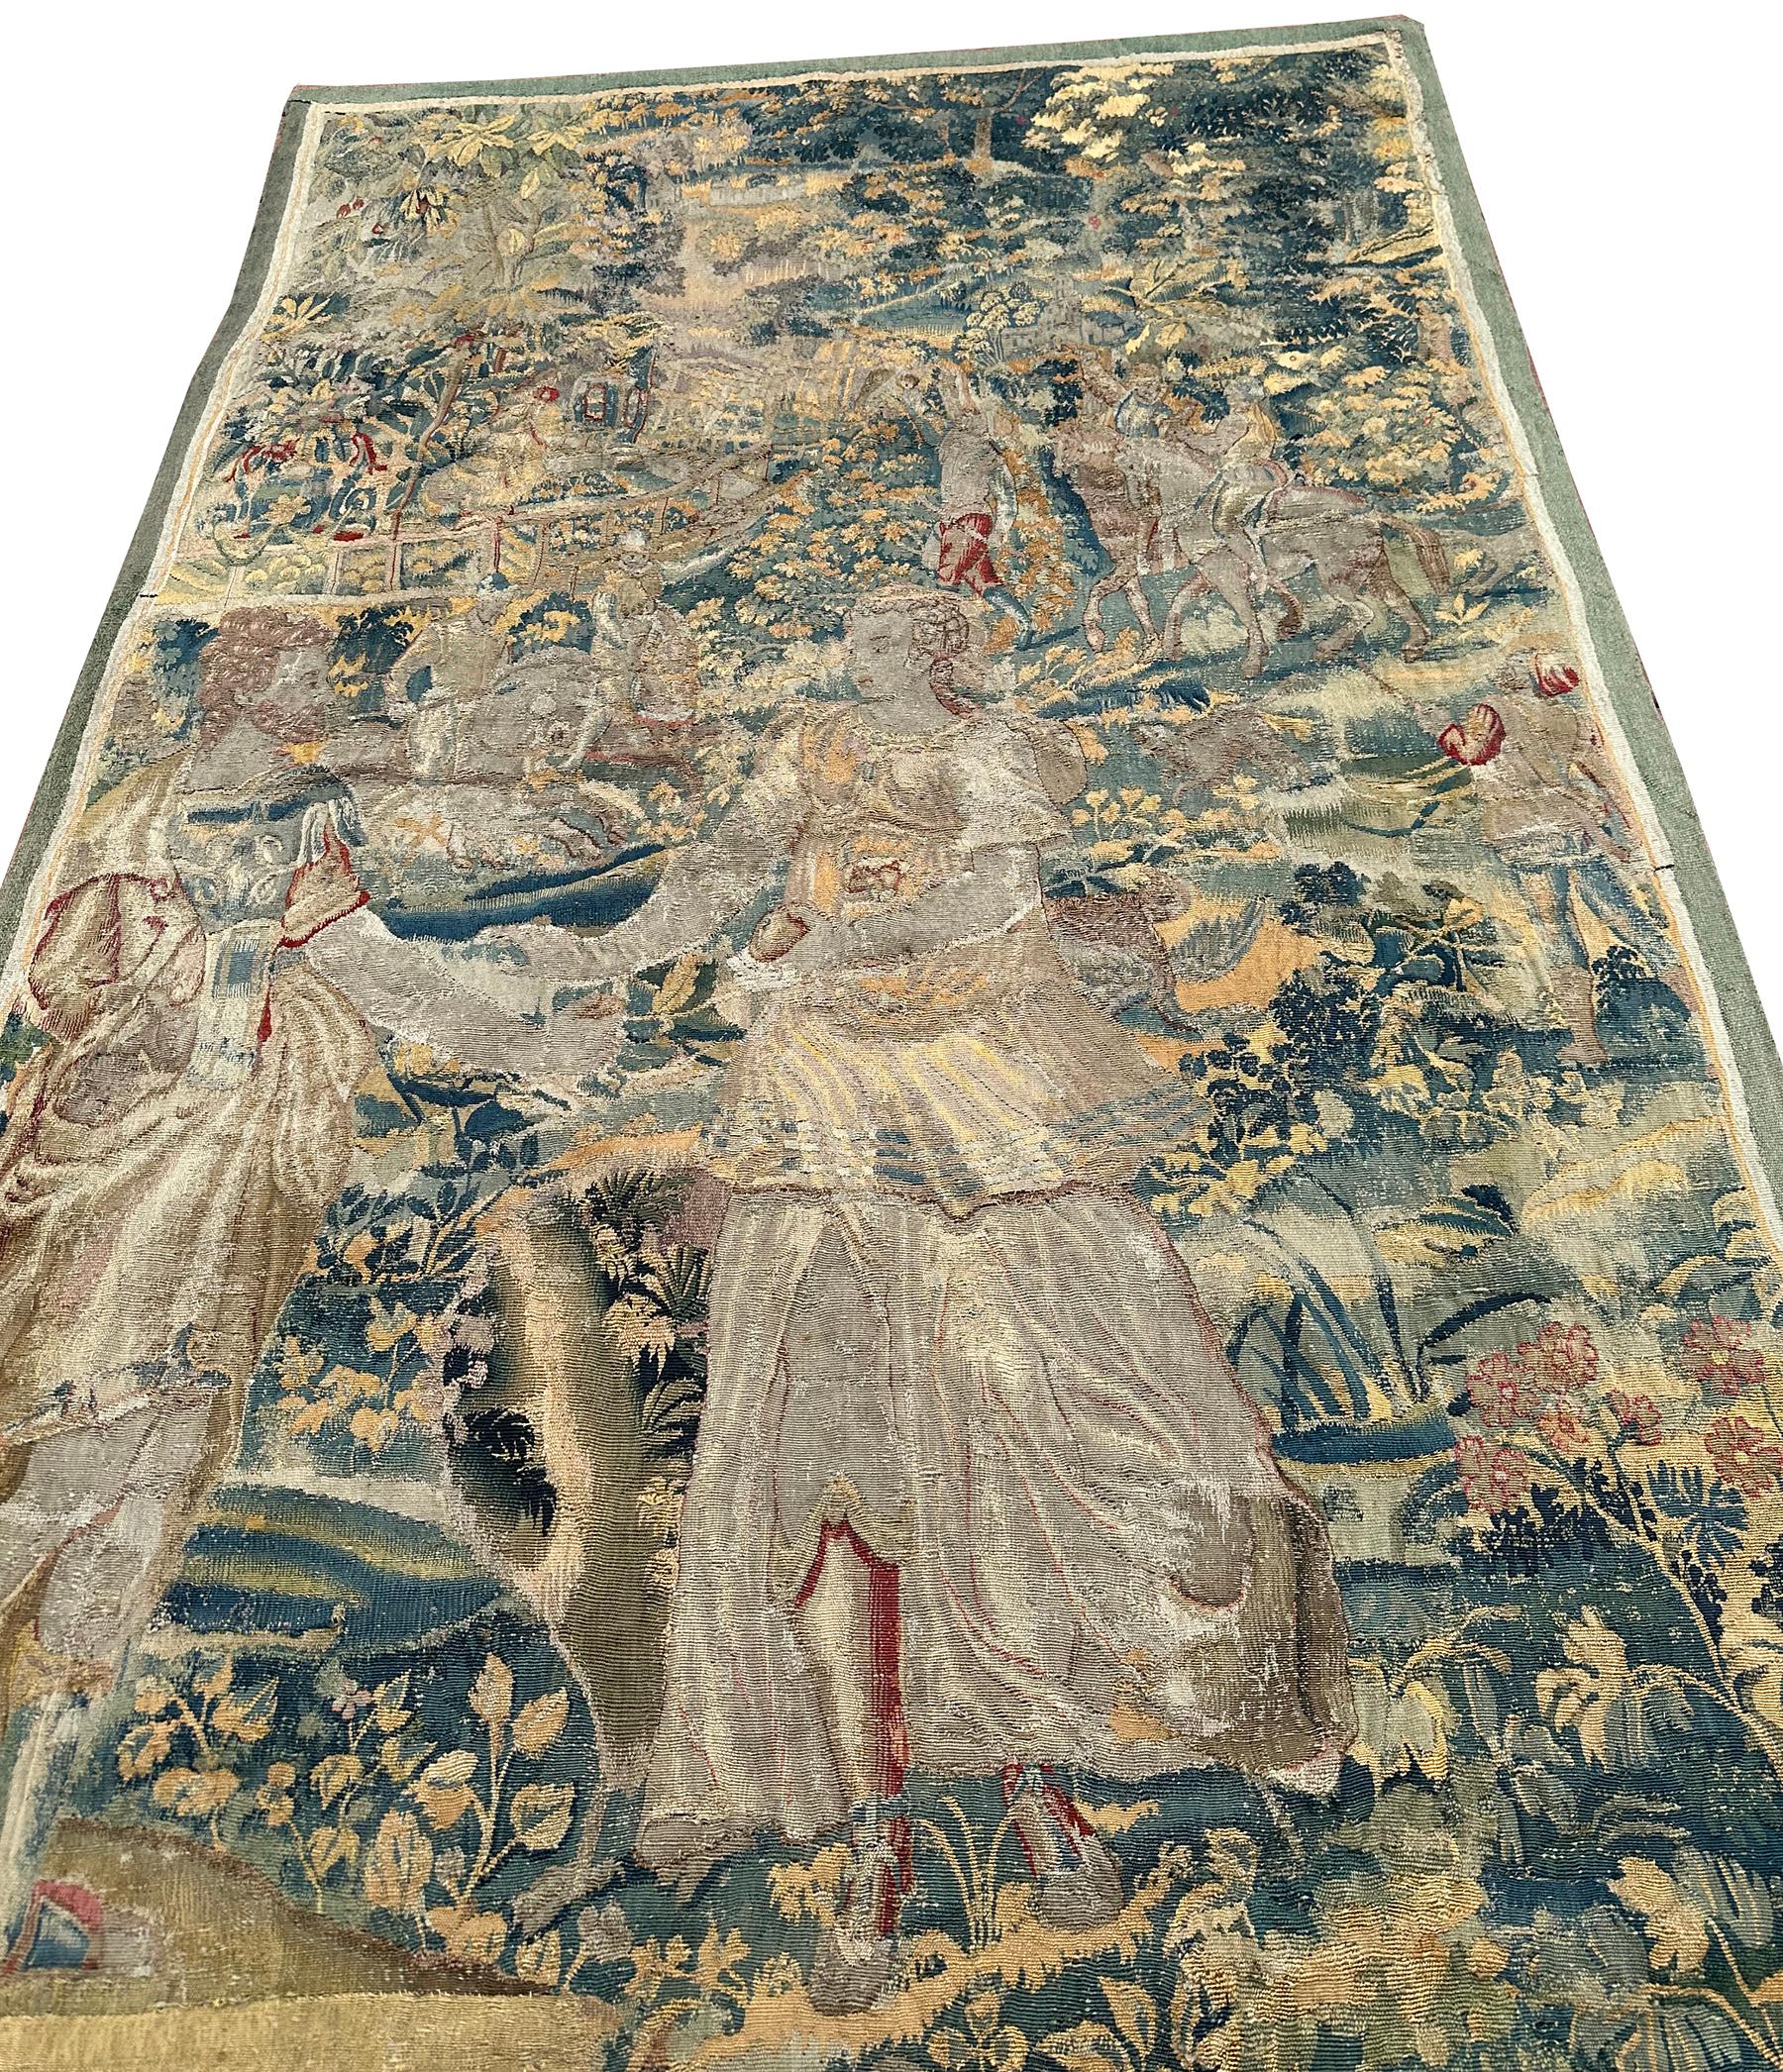  17th century Antique Flemish Tapestry Wool & Silk Verdure Art Nouveau 4x6ft

122cm x 178cm

